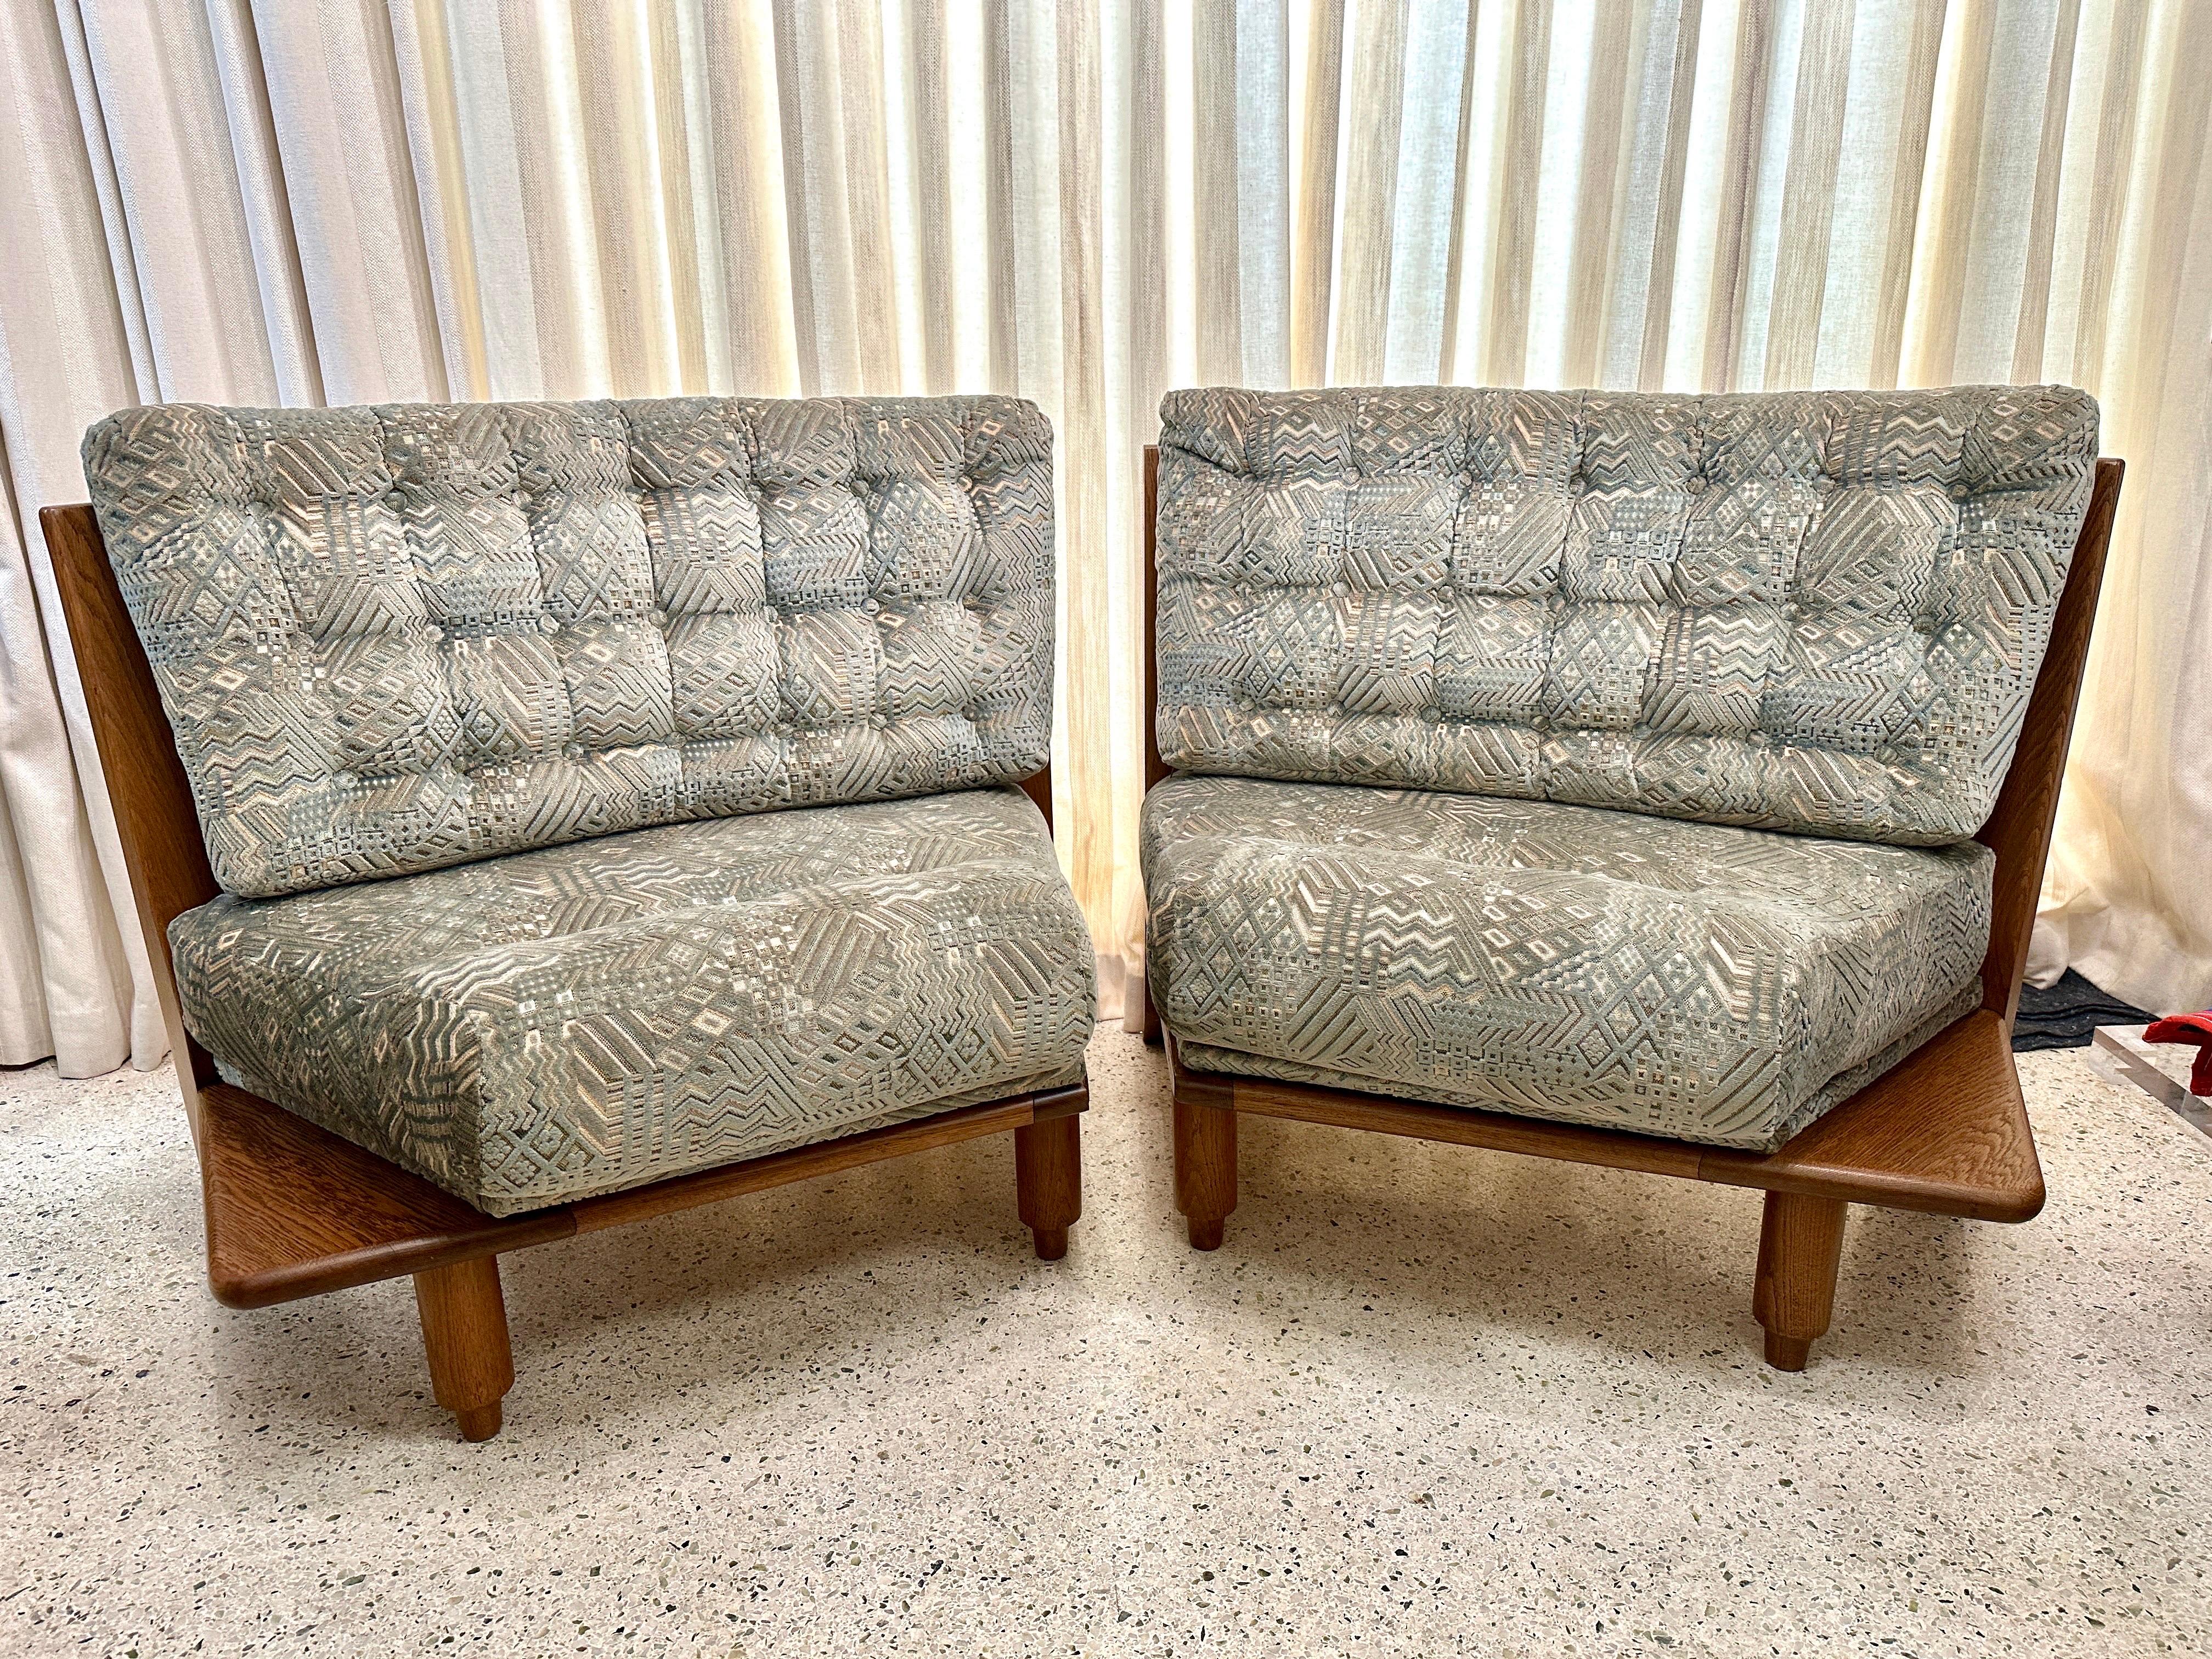 Ce rare canapé sectionnel Chambron en 2 pièces permet d'utiliser les deux fauteuils ensemble ou séparément.  Chaque chaise dispose d'une petite étagère à boissons en bois sur le côté et de magnifiques lattes de piquet en chêne à l'arrière.  Le tissu